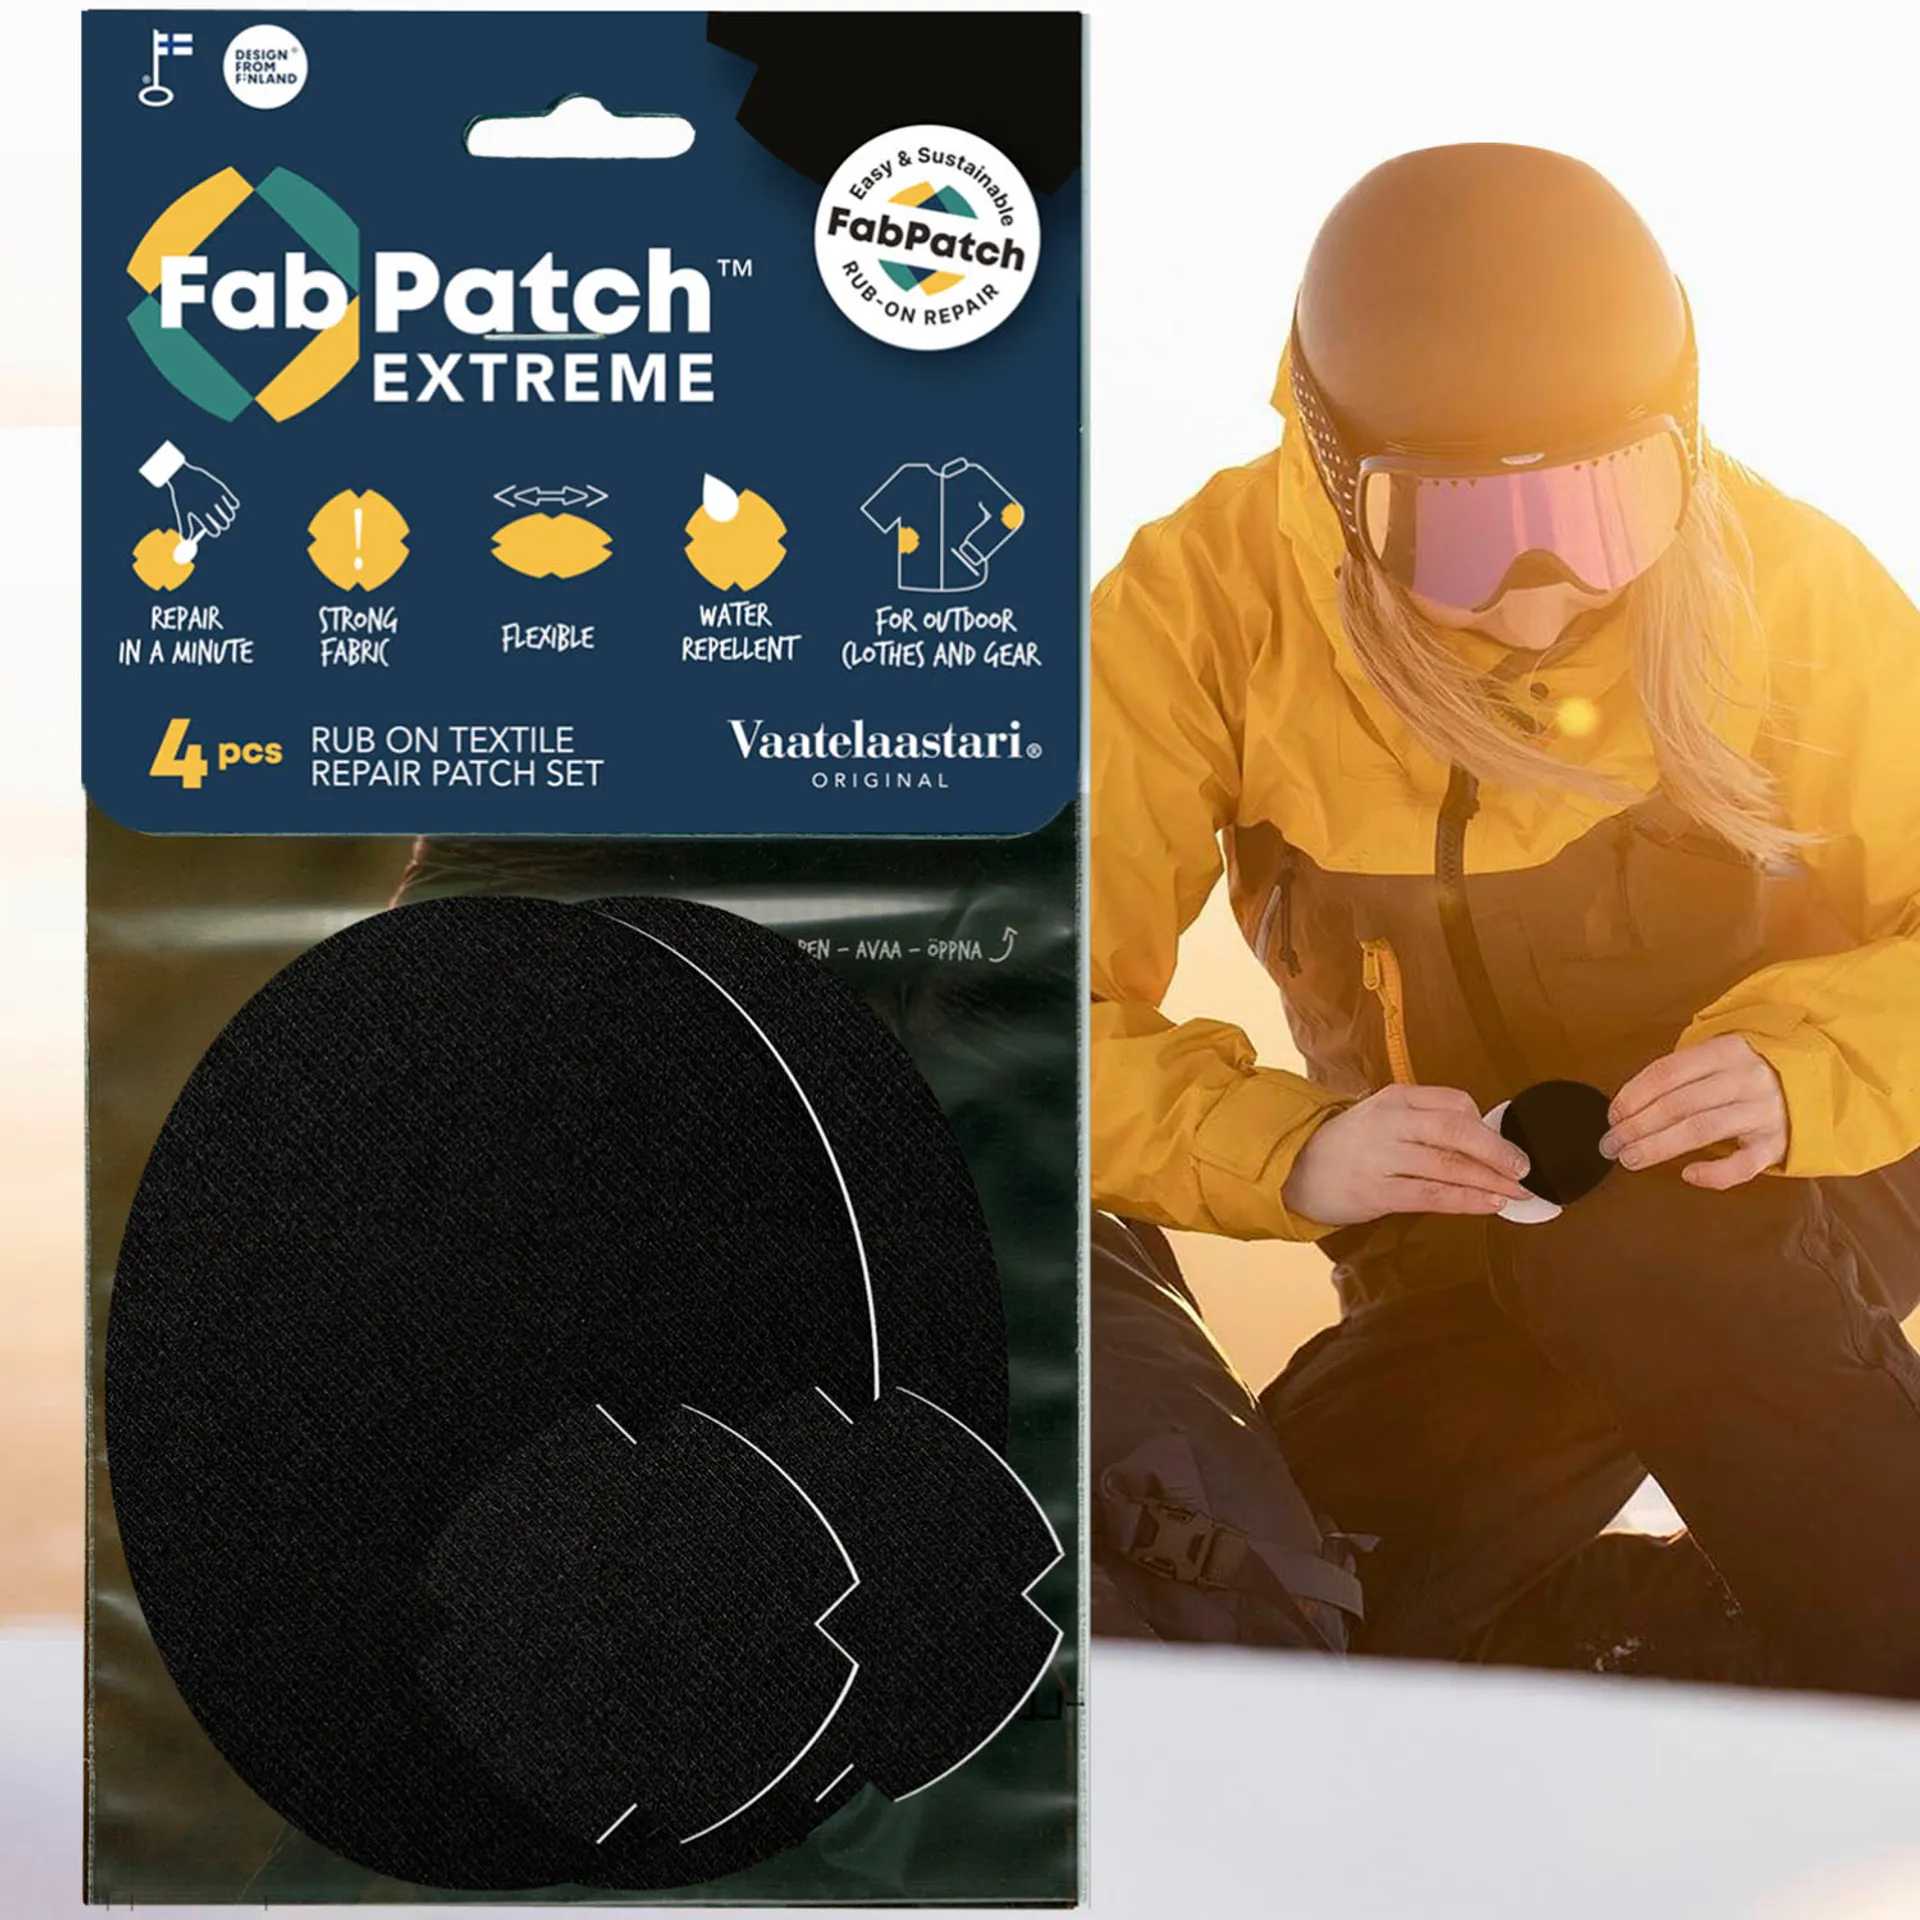 FabPatch Vaatelaastari, Extreme, hankaamalla kiinnittyvä tekstiilien korjauspaikka - 3